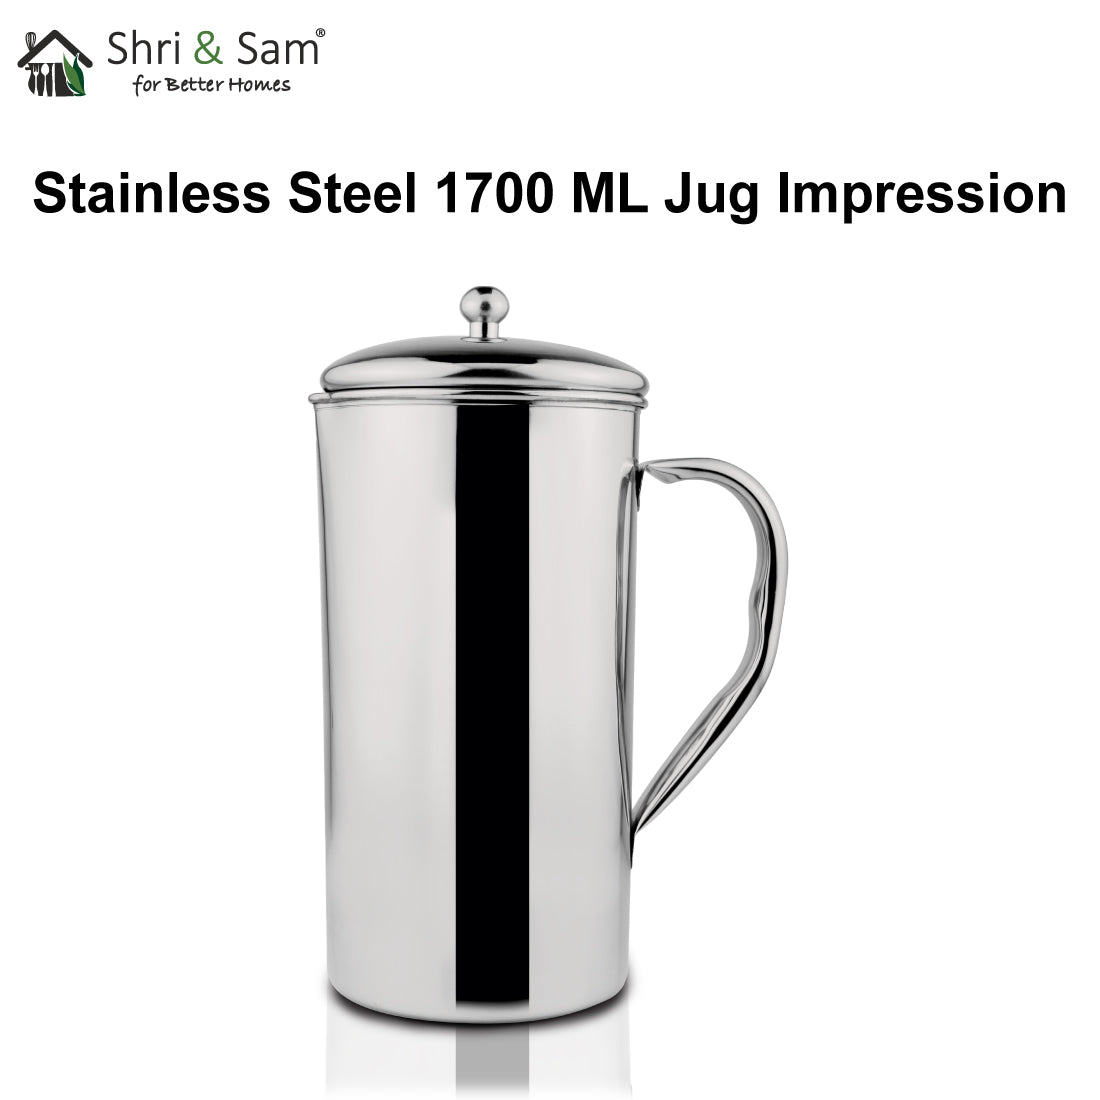 Stainless Steel 1700 ML Jug Impression